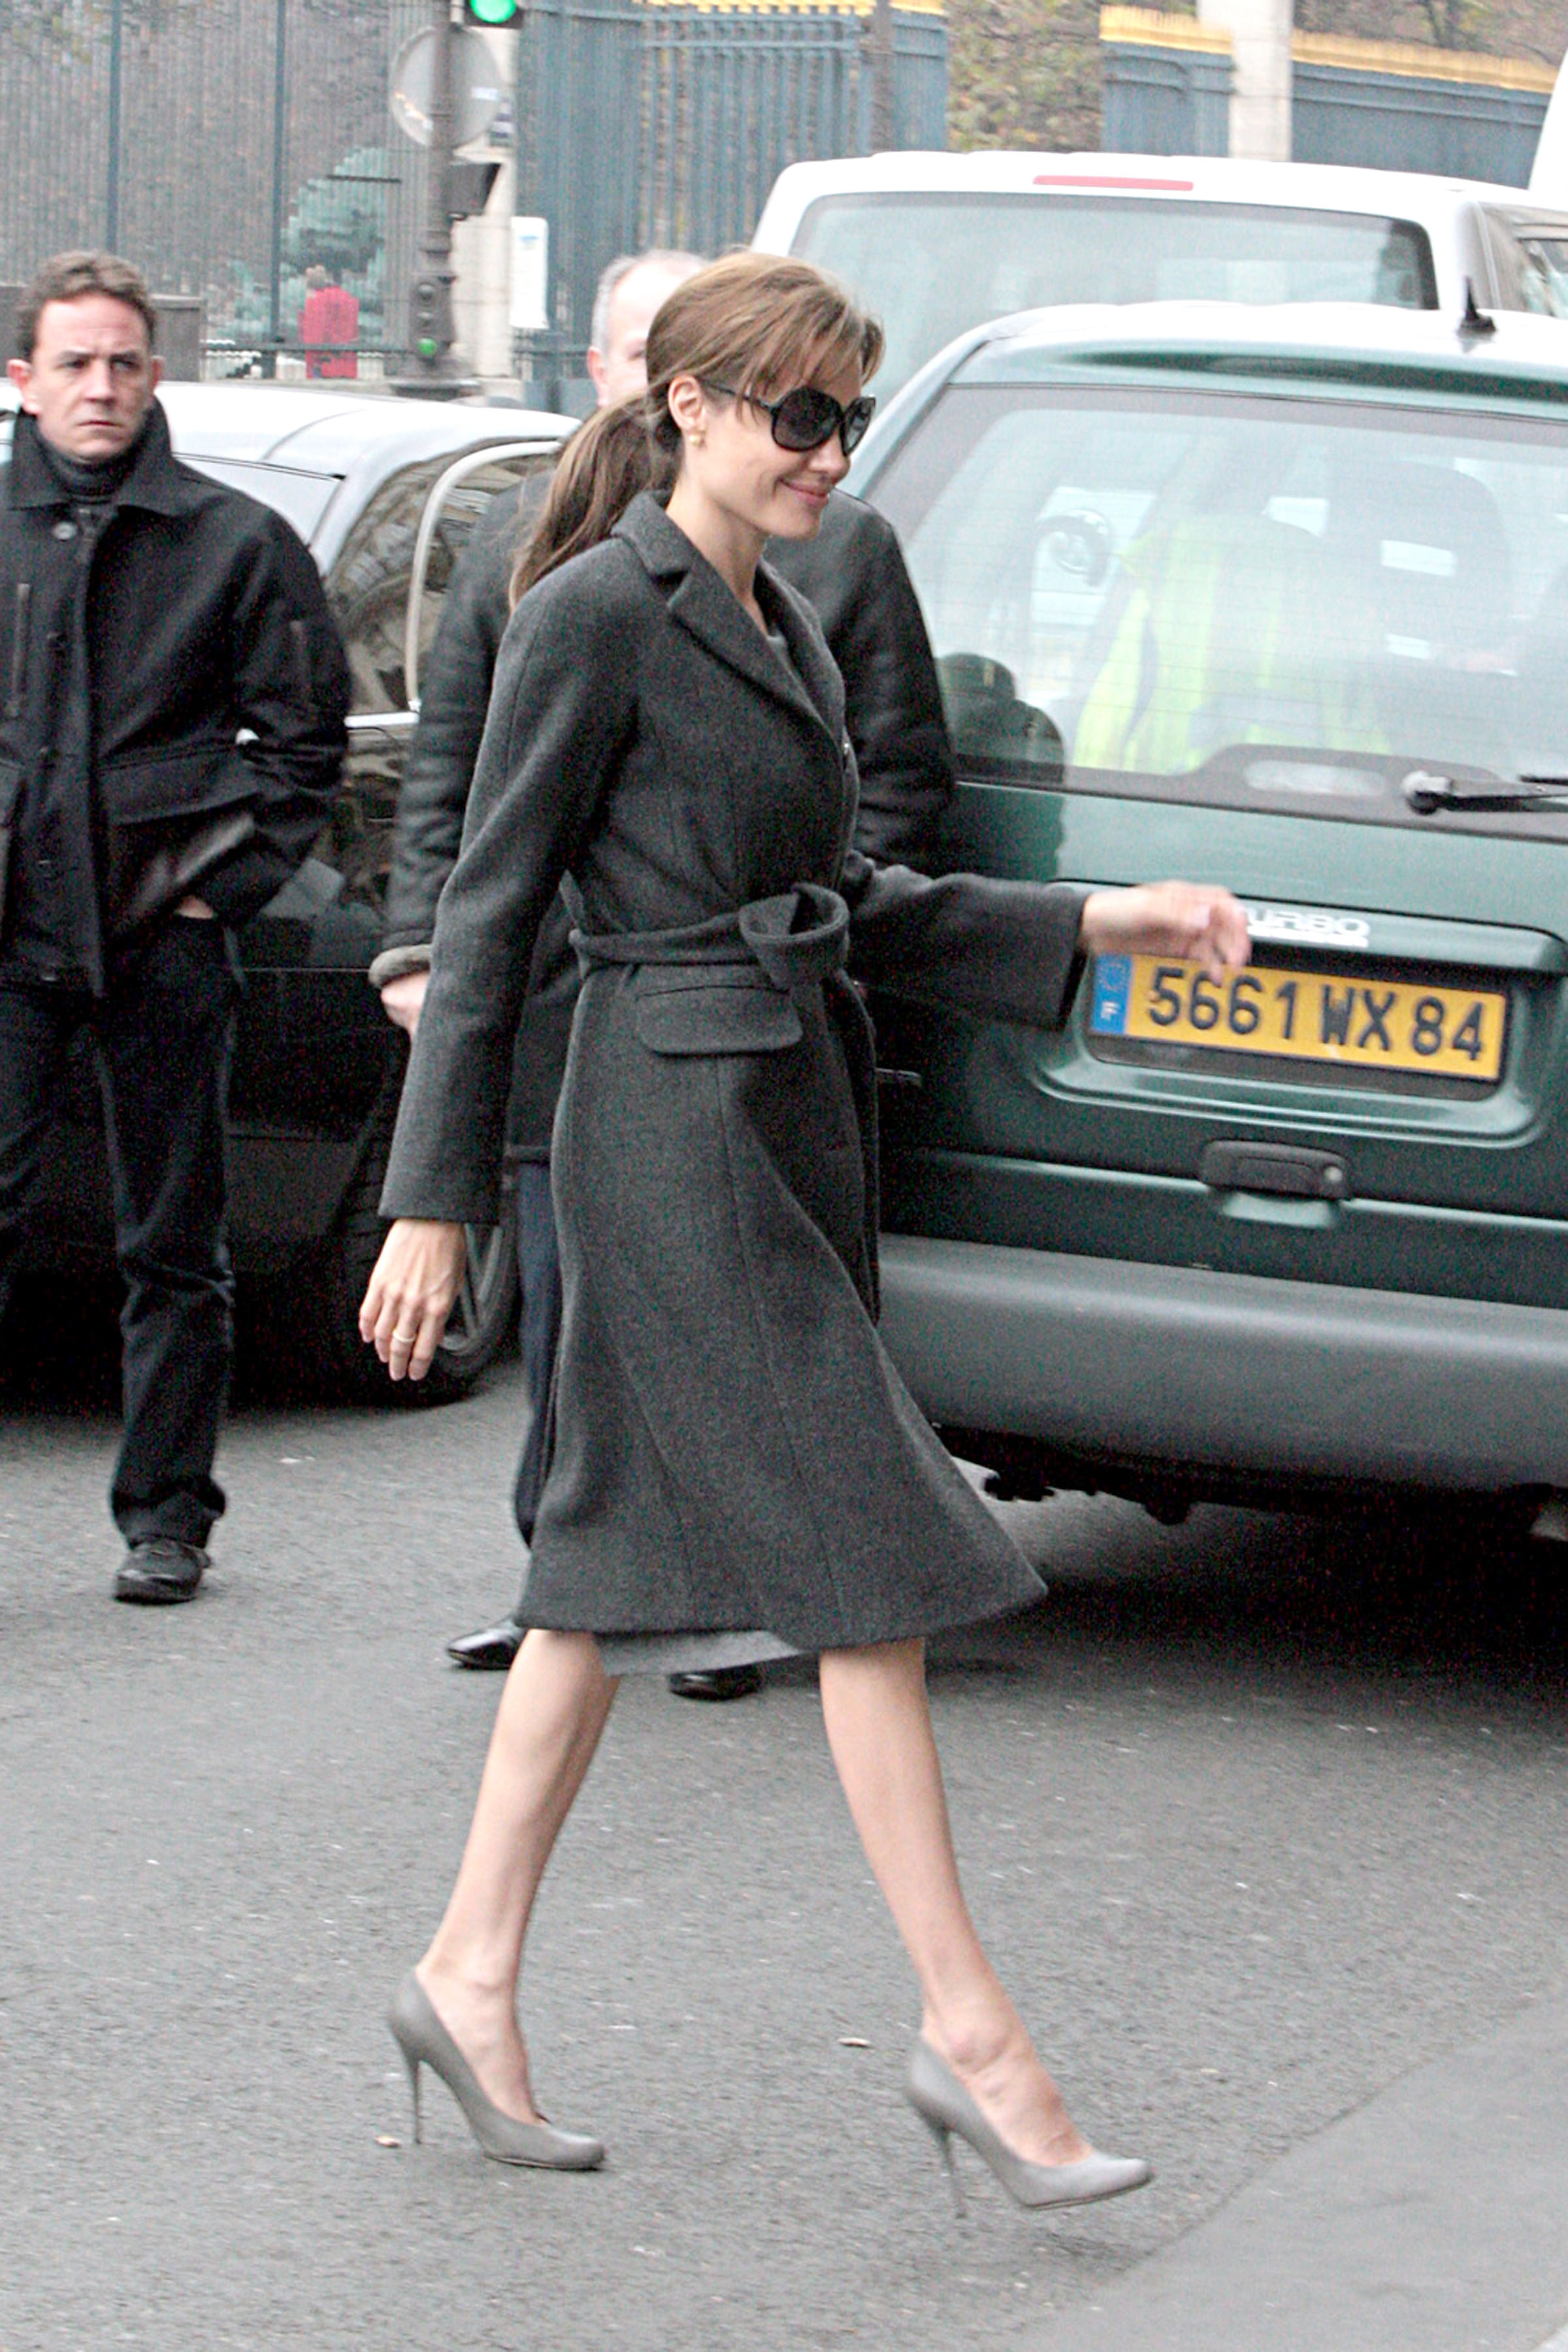 Angelina Jolie Legs